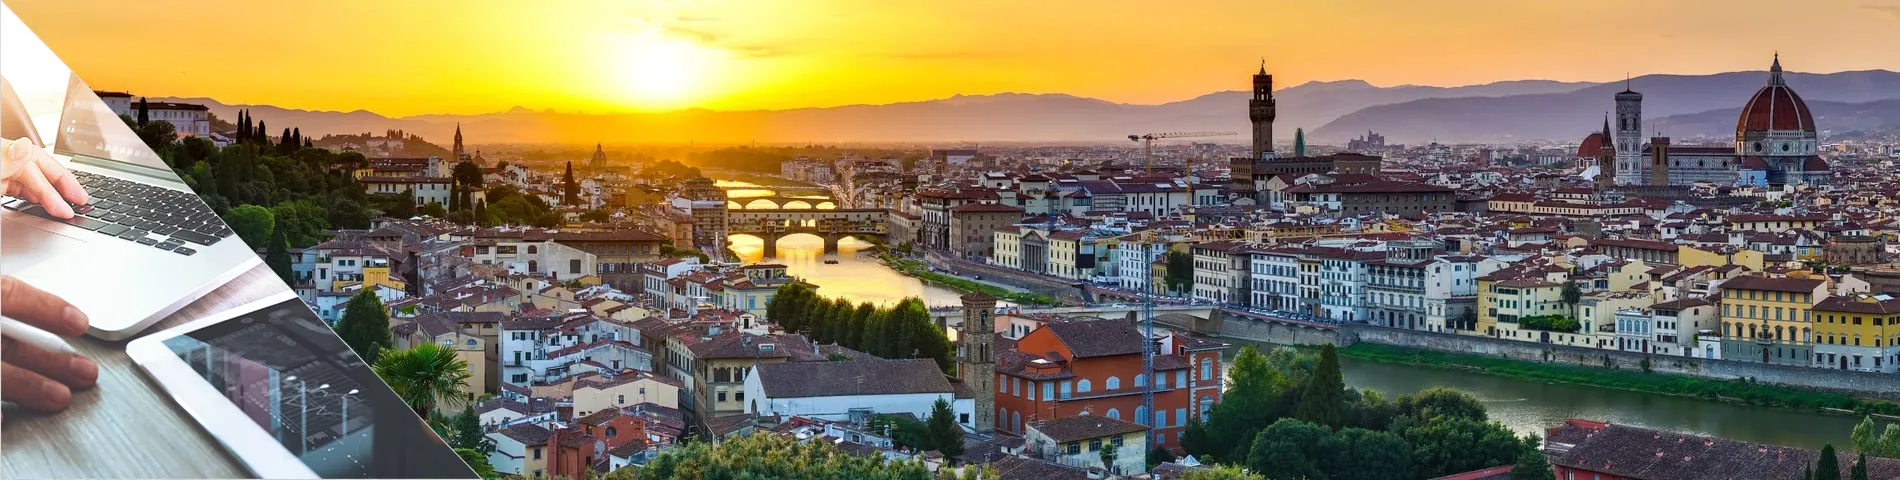 Florencie - Italština a digitální média